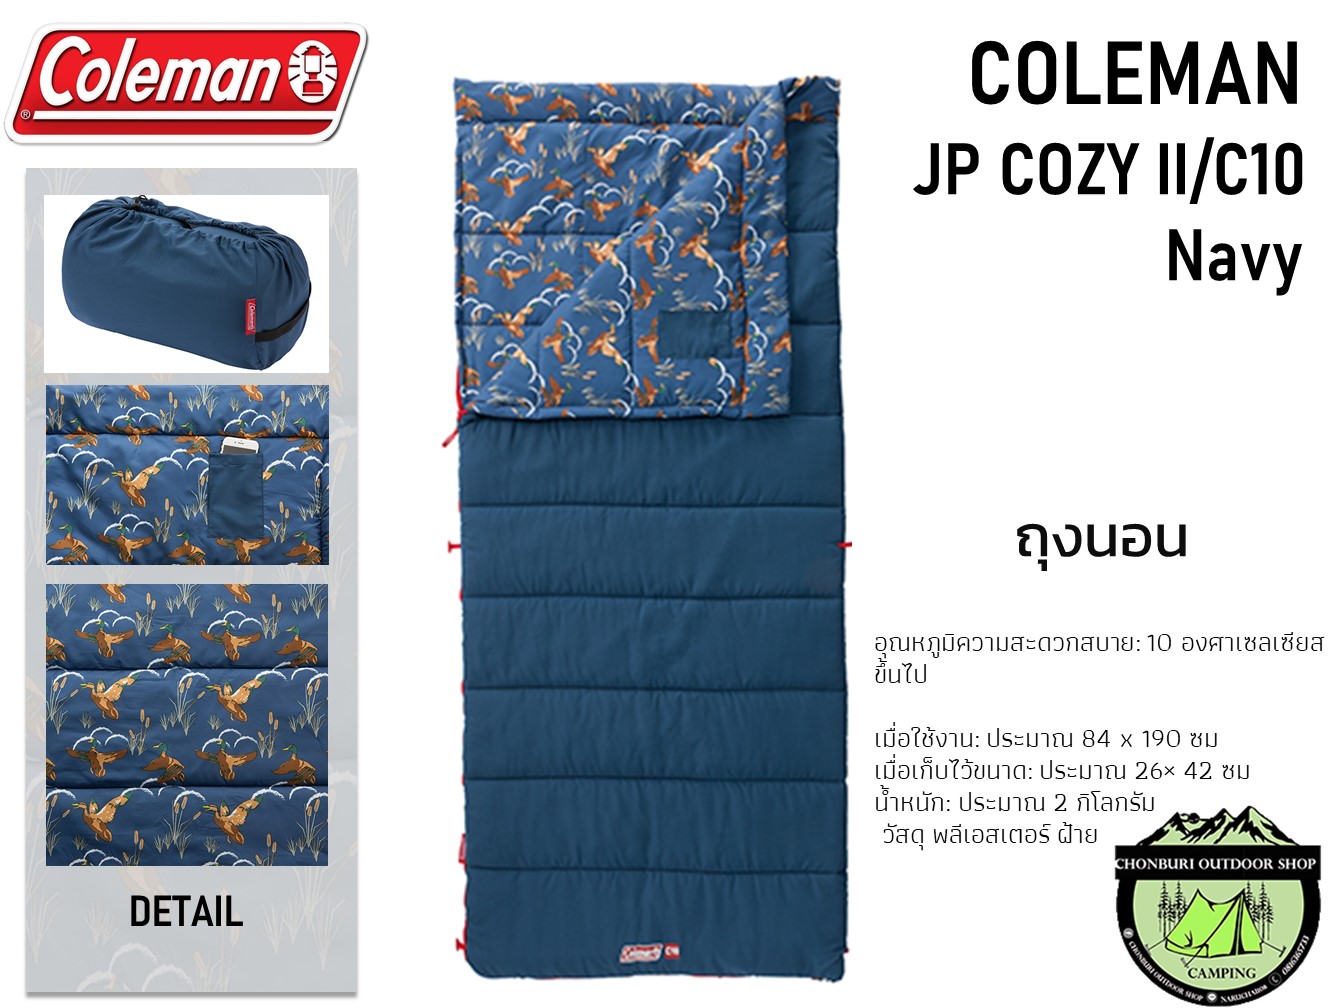 Coleman JP COZY II/C10 Navy ถุงนอนอุณหภูมิสะดวกสบาย: 10 ℃